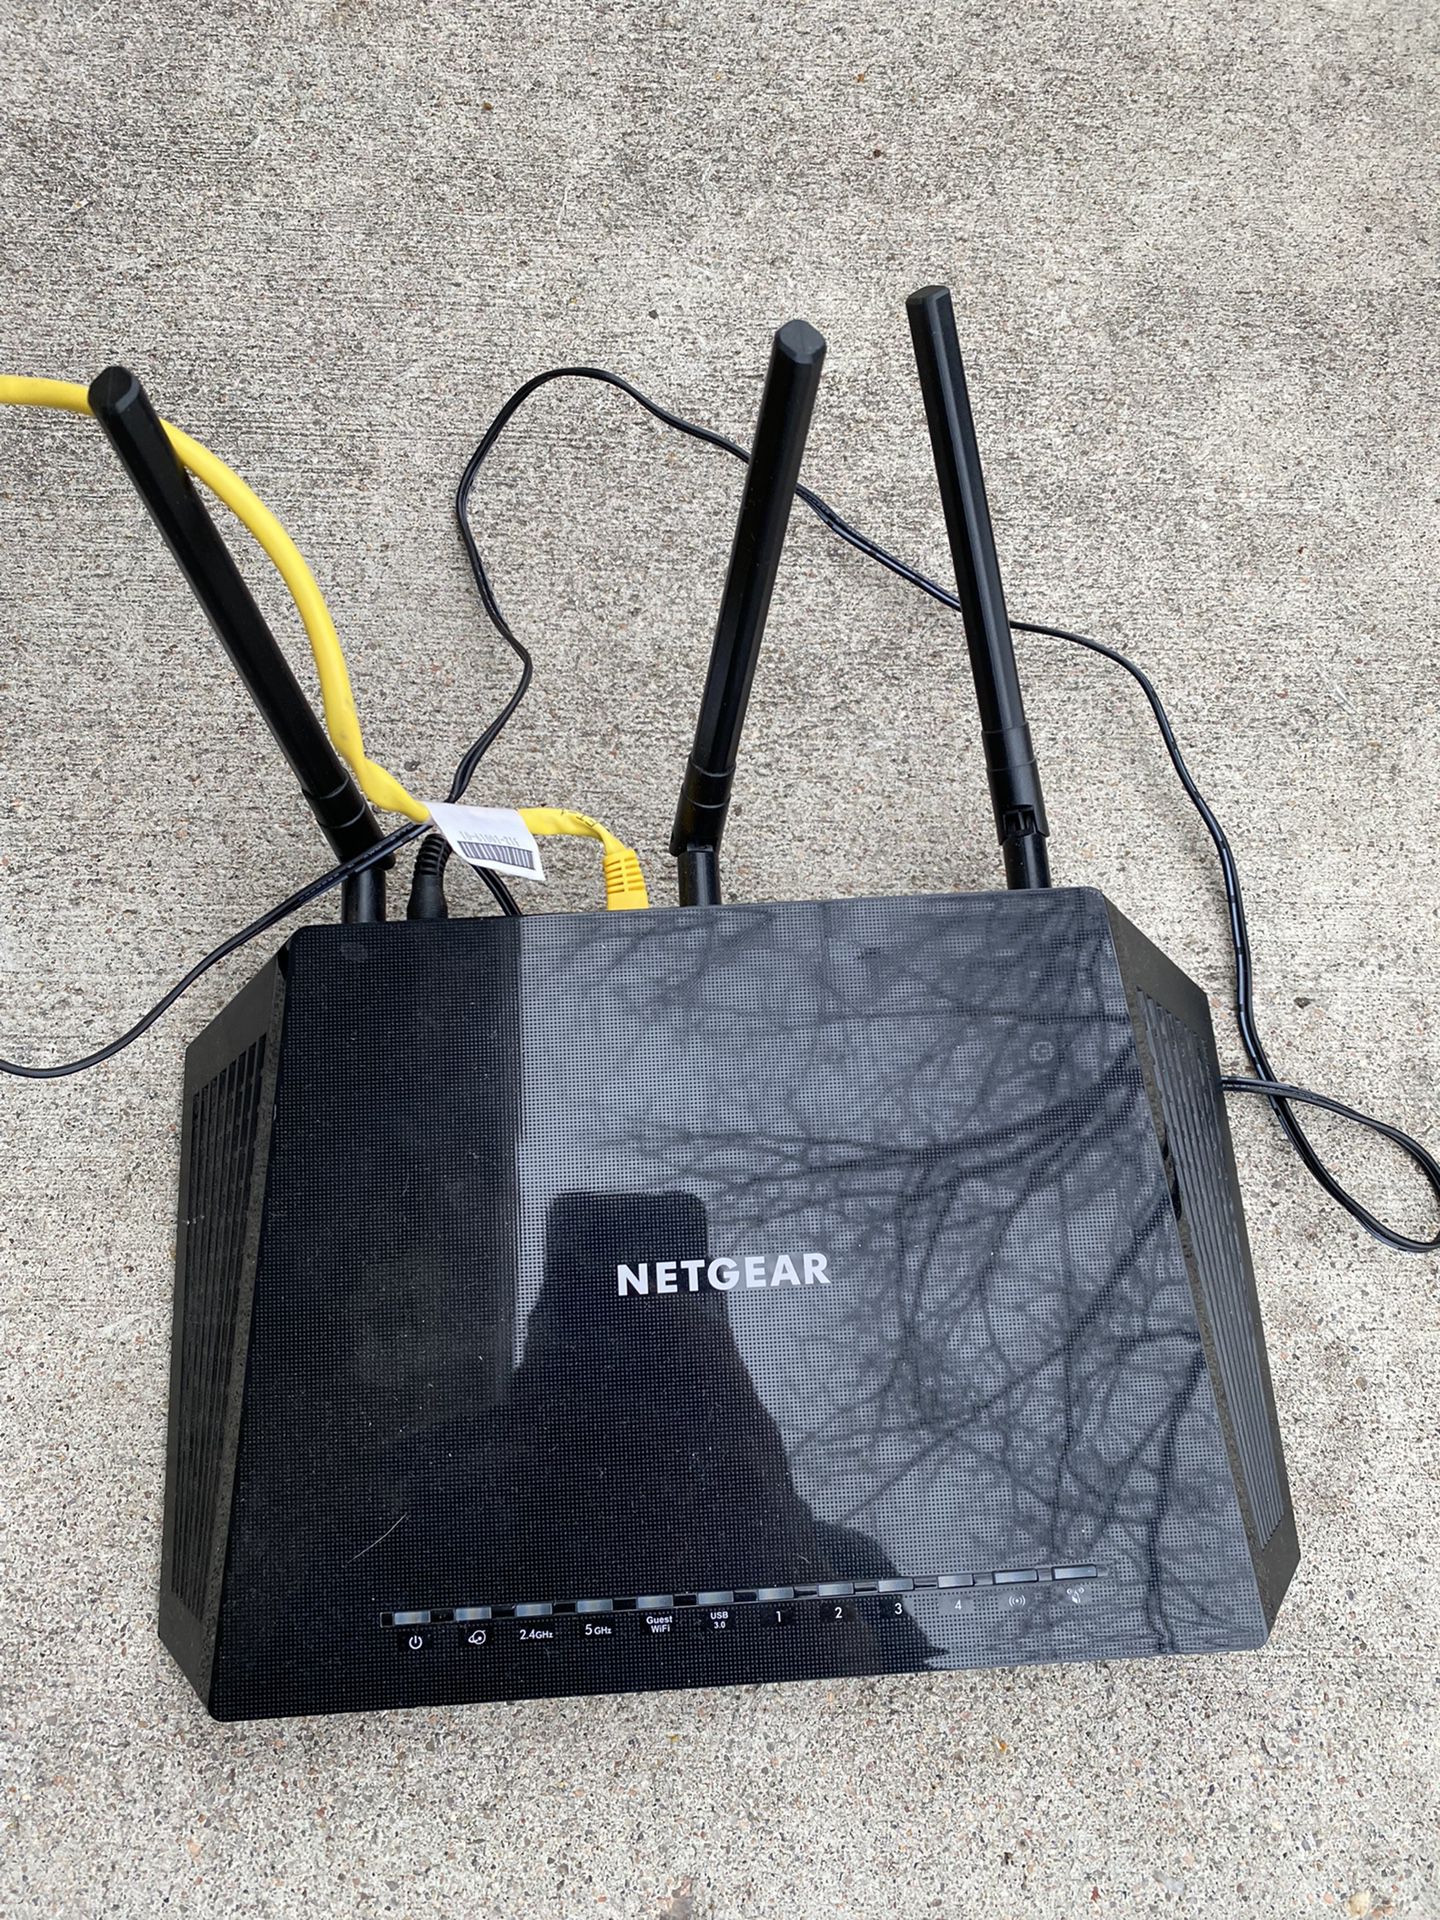 NETGEAR Nighthawk AC1750 Smart WiFi Router 